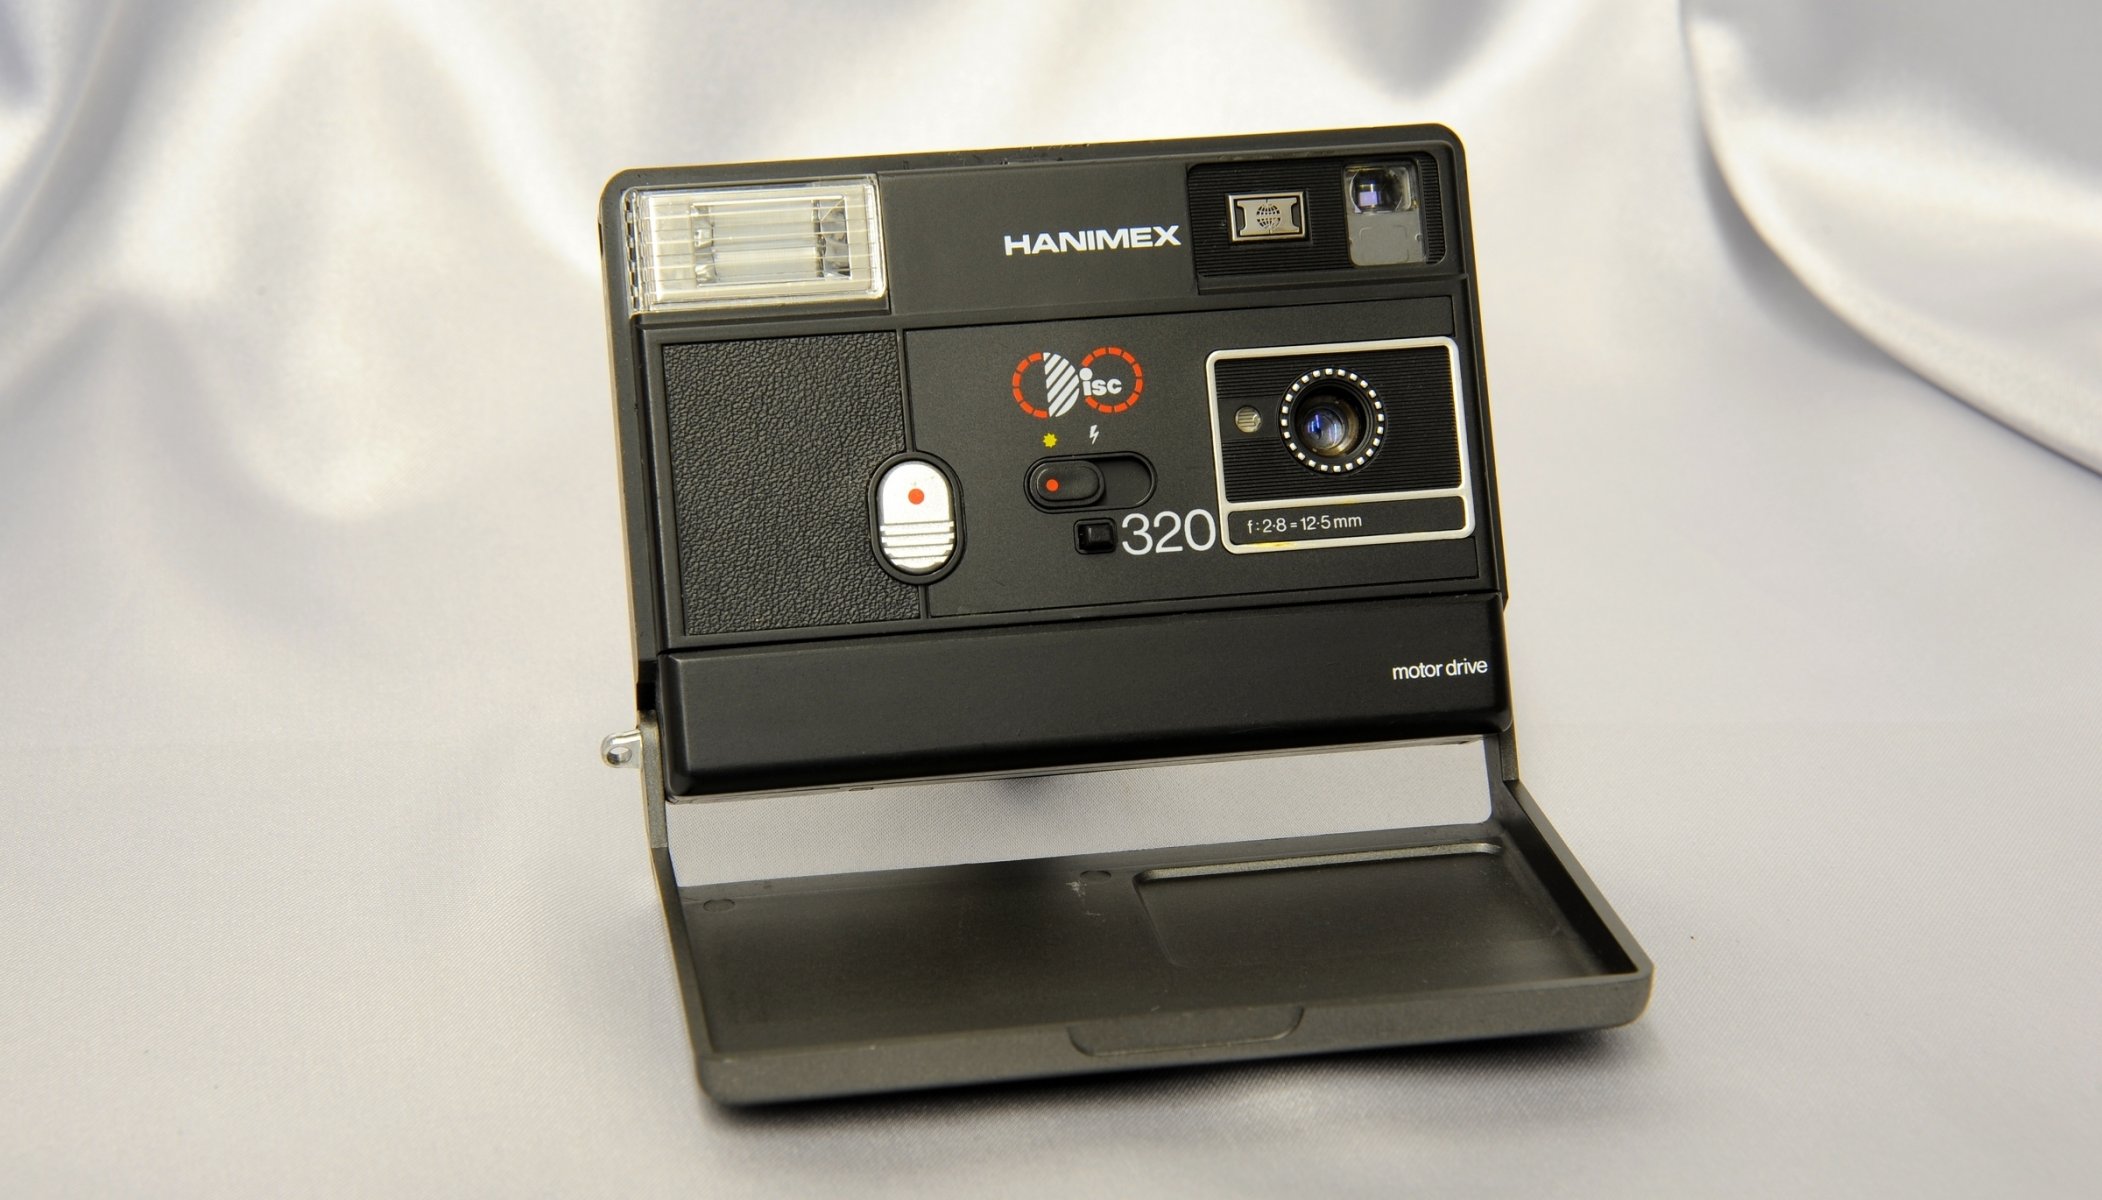 hanimex диск 320 привод мотора камера 5 мм f / 2.8 выдержка 1/200 1/100 с флэш-памятью встроенная вспышка фон